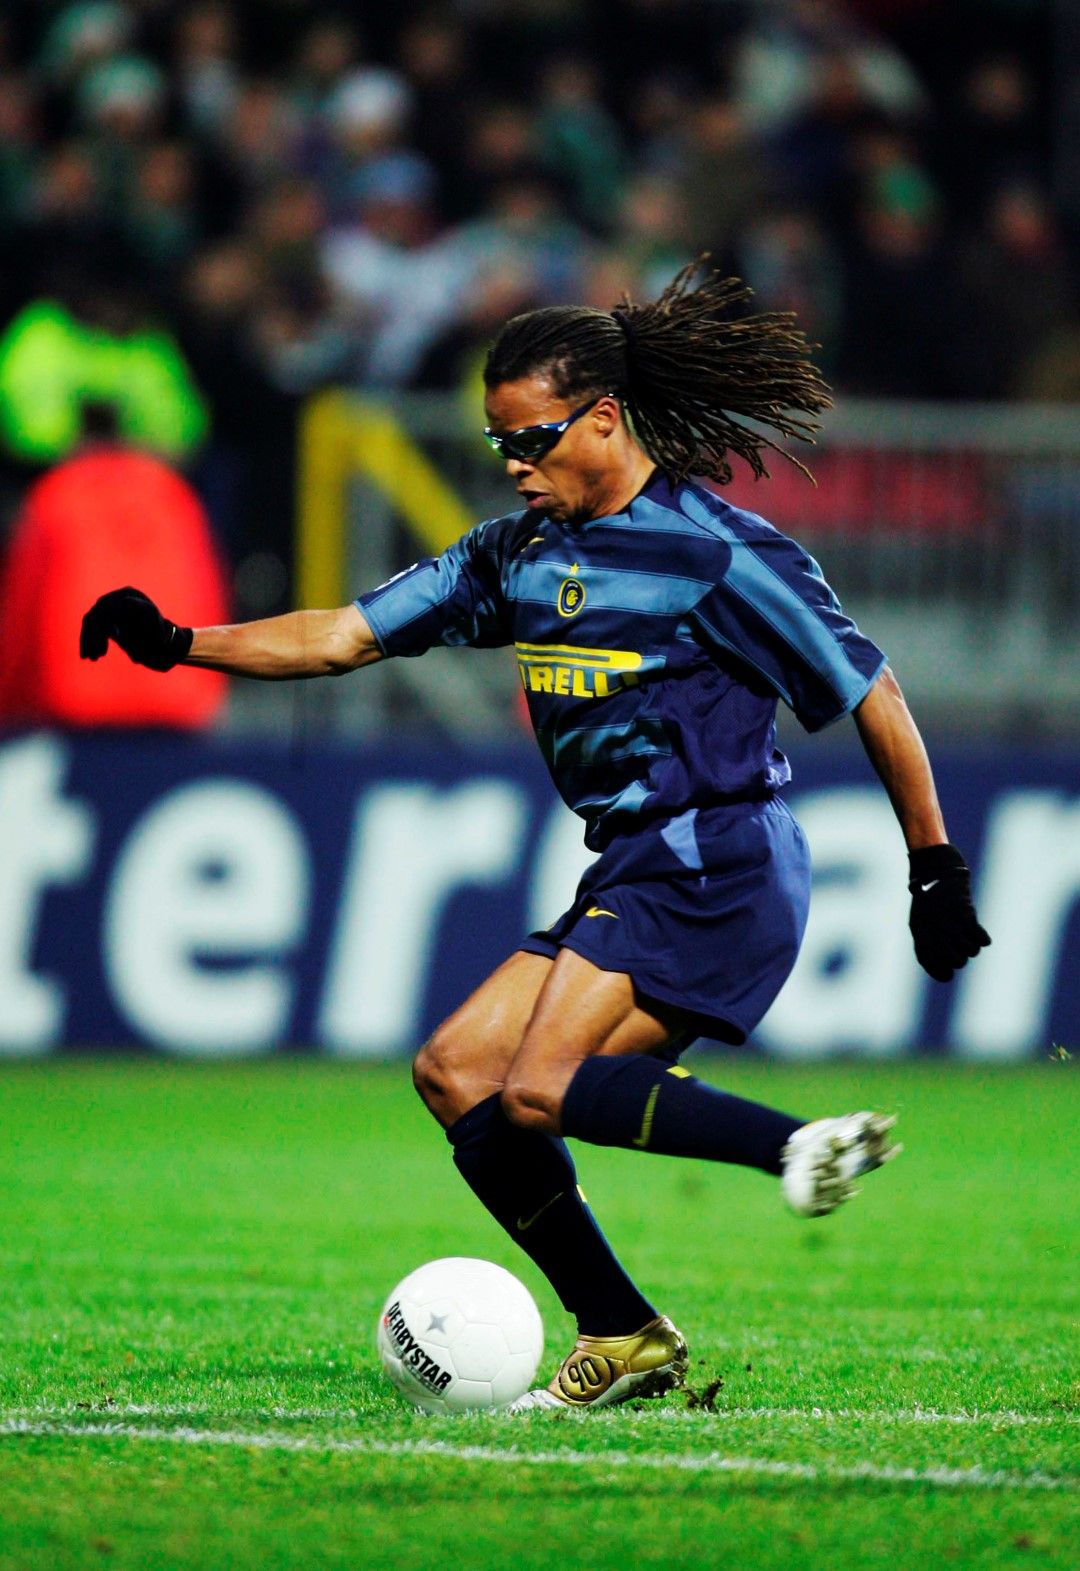  През 2004-а отиде в "Интер", където също помръкна - явно Милано не е неговият град за футбол... Записа 13 мача и замина за Англия.